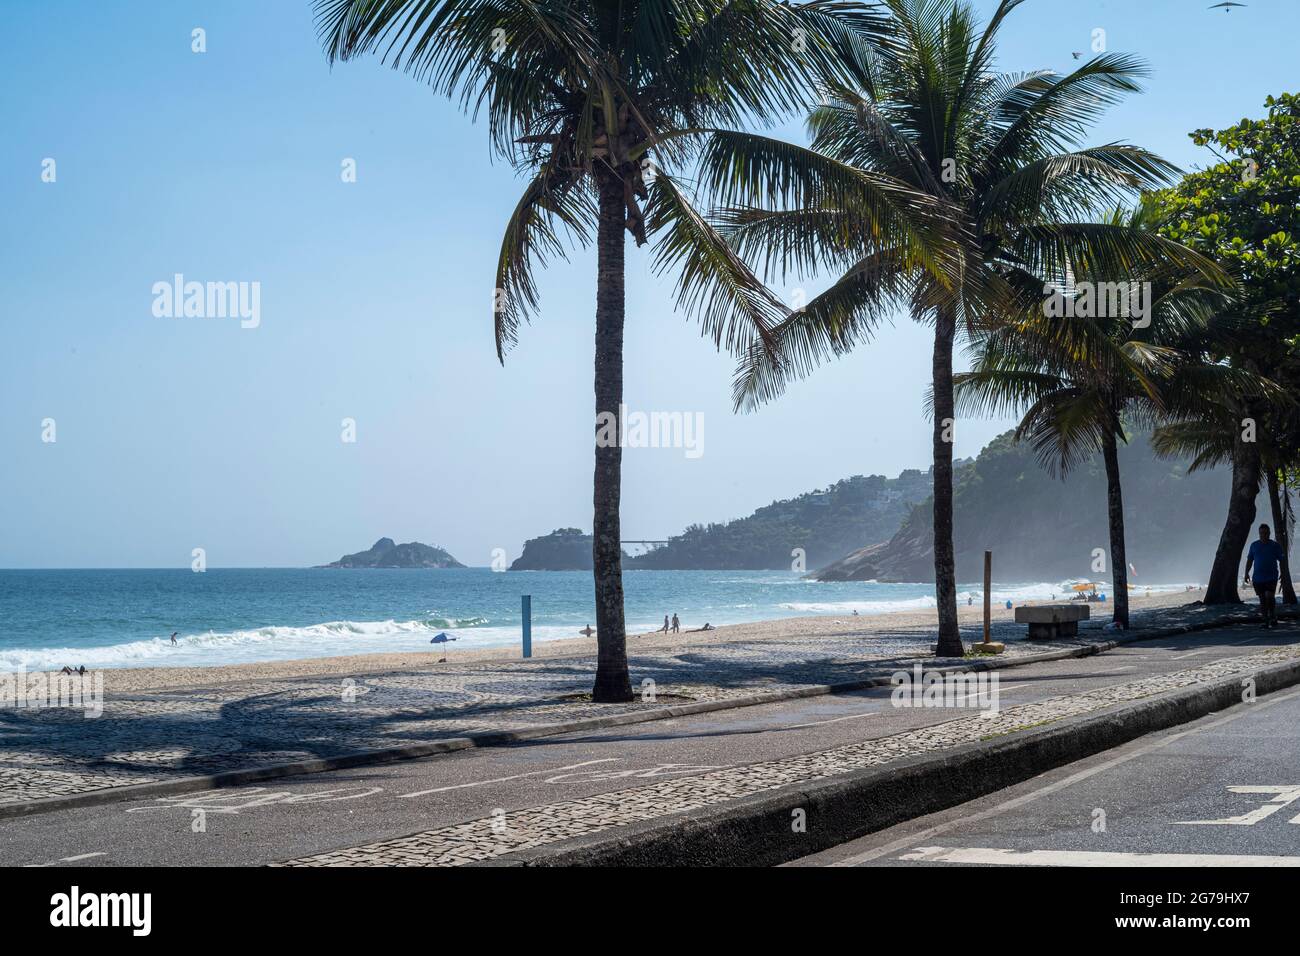 Beach Promenade Sao Conrado, Rio de Janeiro, Brazil Stock Photo